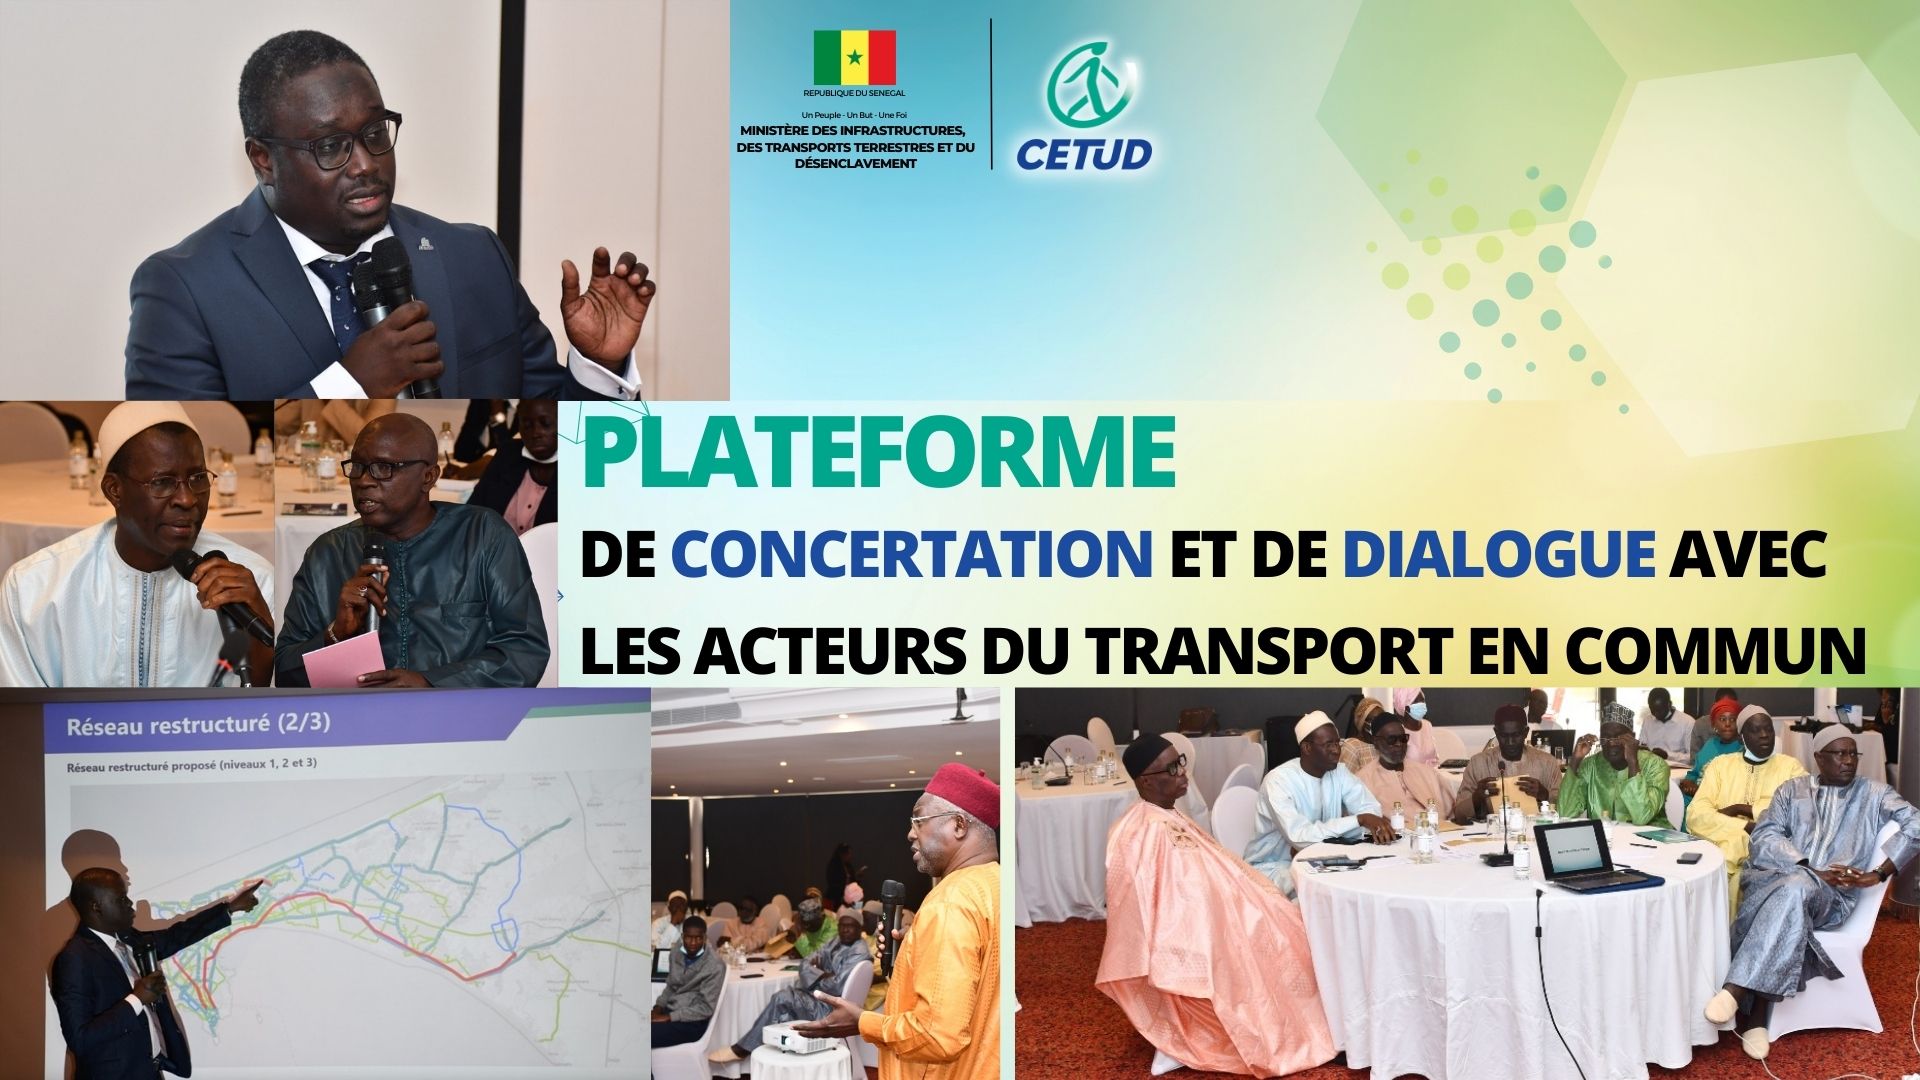  lancement de la Plateforme de concertation avec les opérateurs locaux de transport public dans le cadre du projet de restructuration globale du réseau de transport en commun.